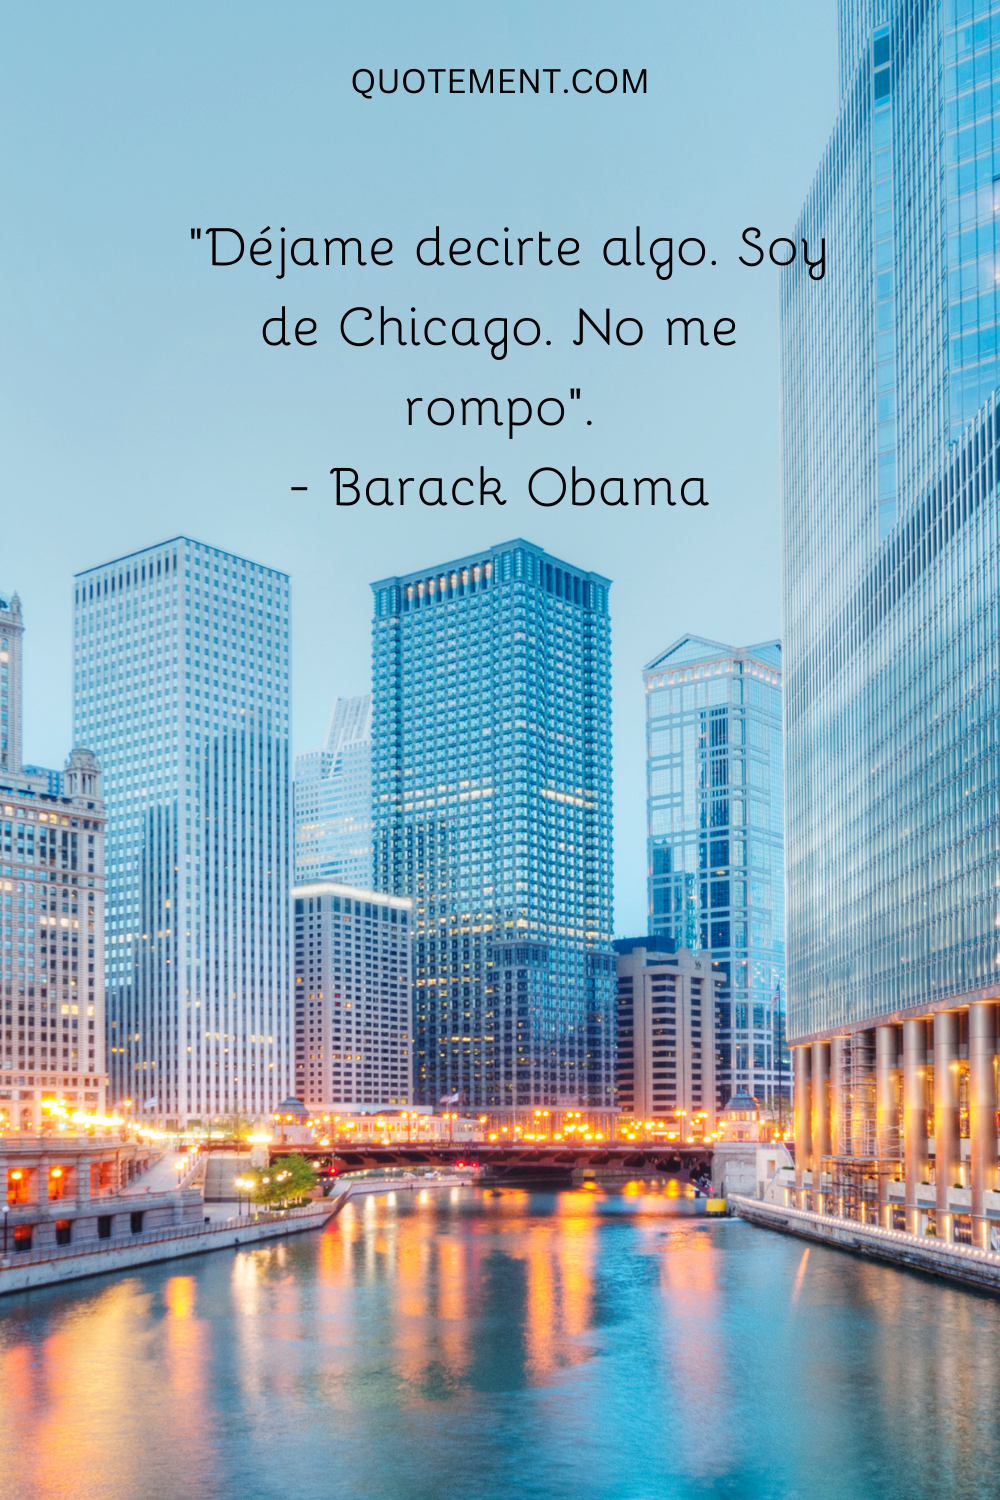 "Déjame decirte algo. Soy de Chicago. No me rompo". - Barack Obama